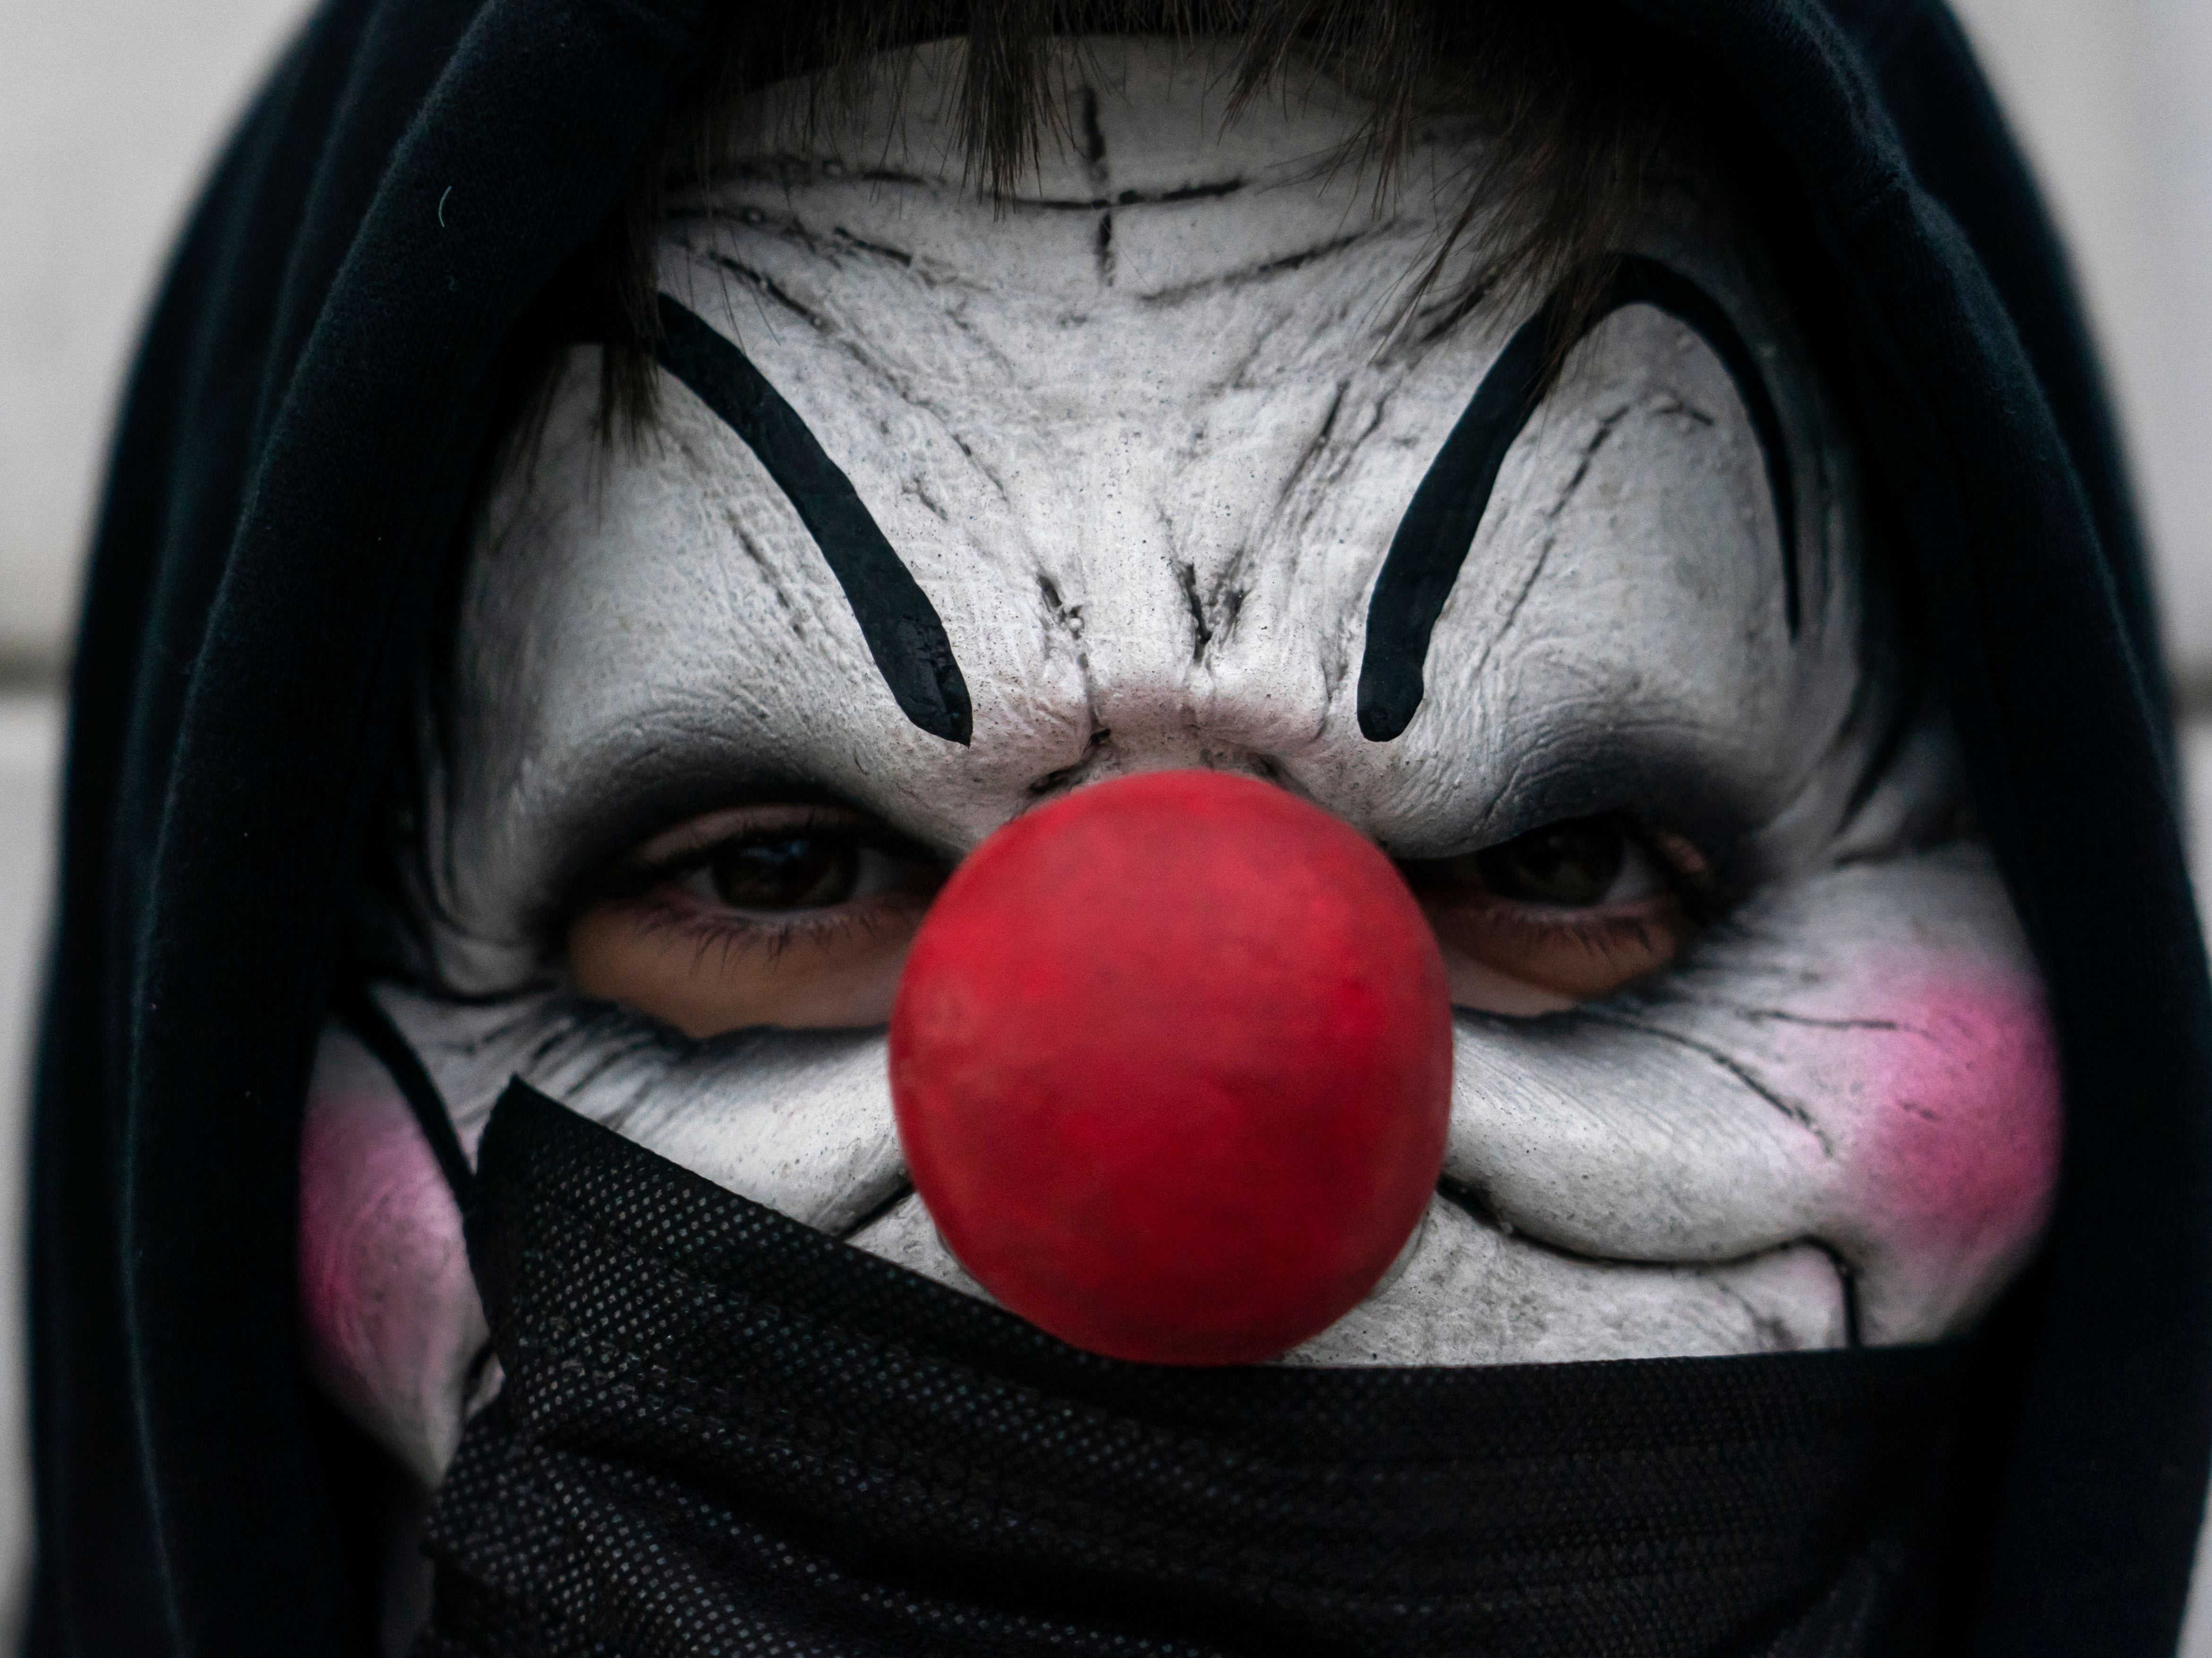 A man in a clown costume